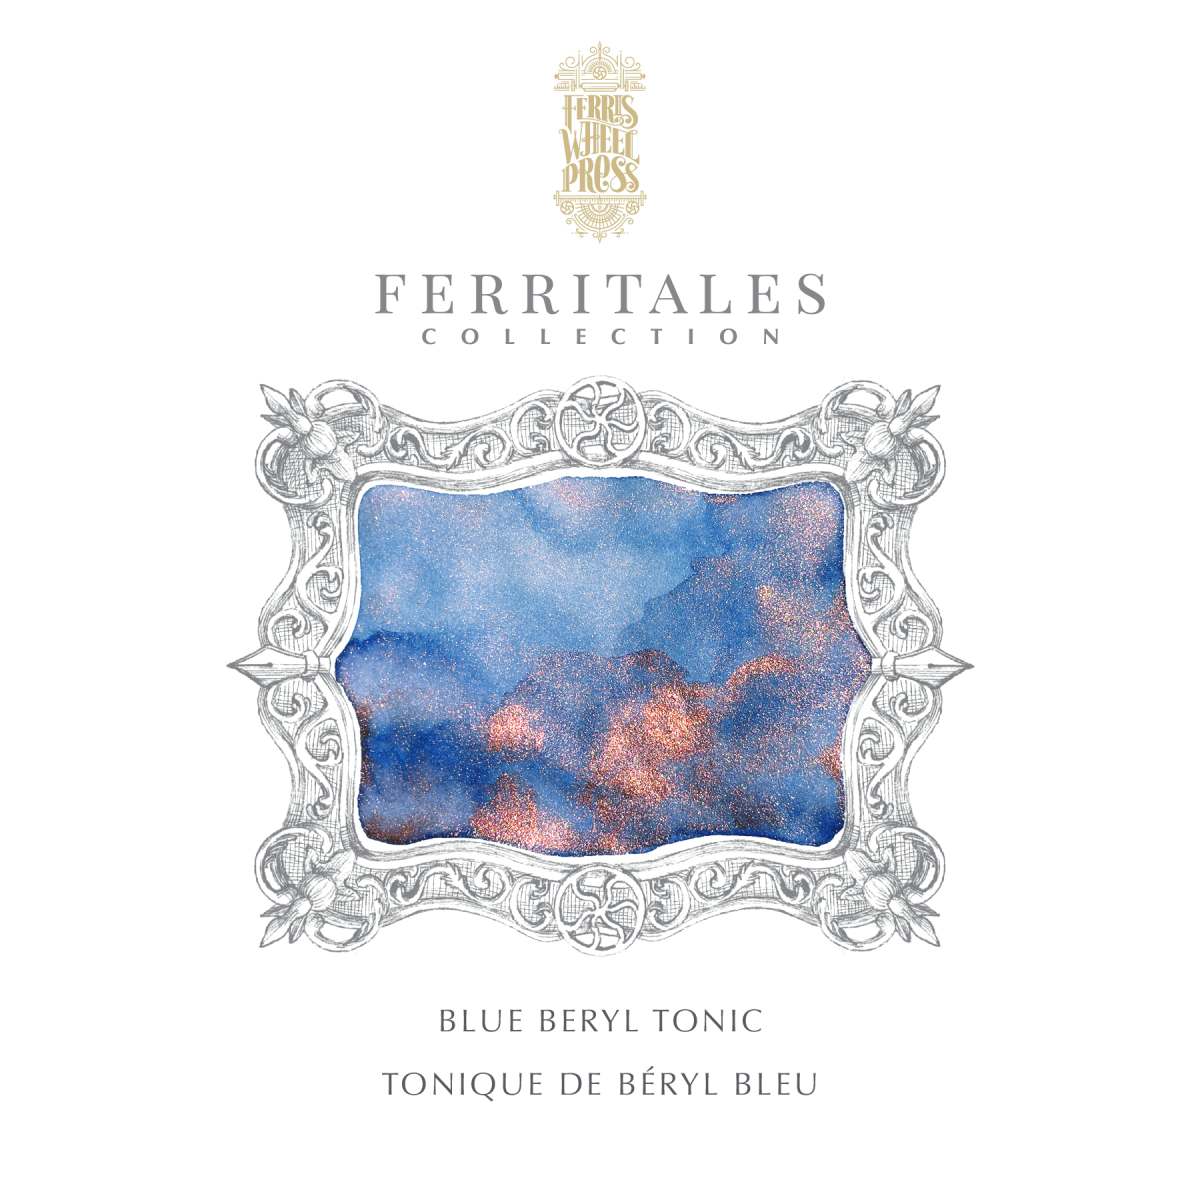 Ferris Wheel Press - Ferritales Ink - Blue Beryl Tonic, 20 ml